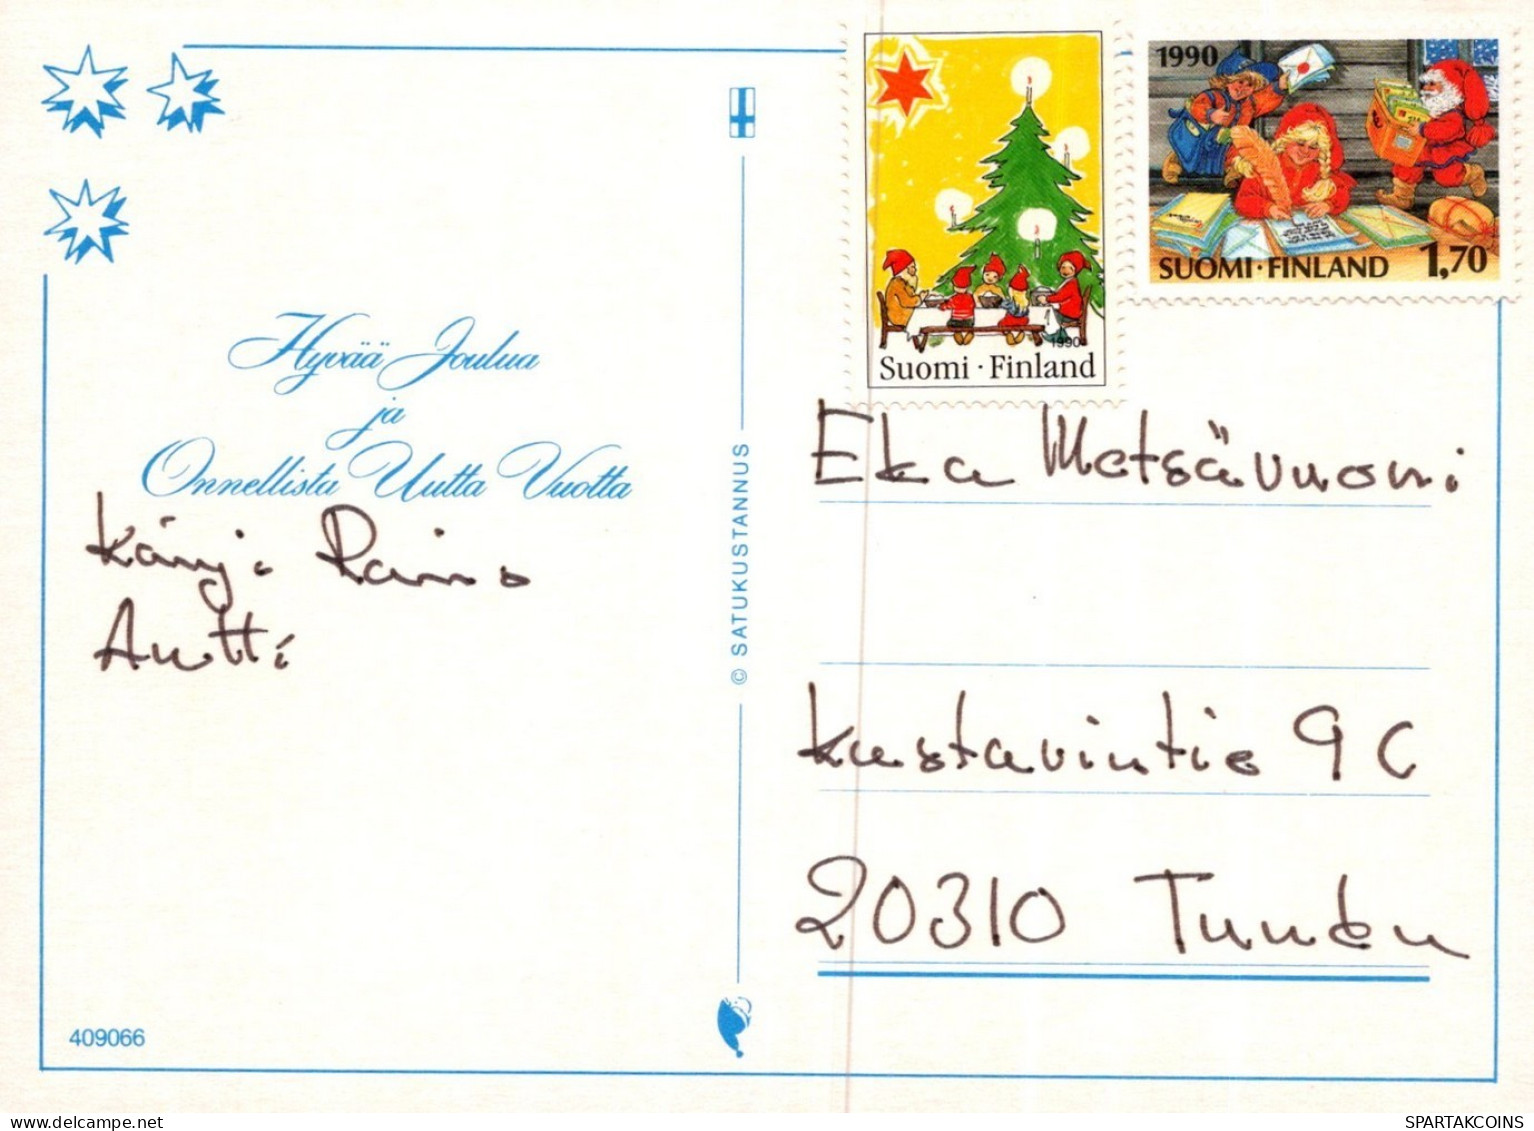 PÈRE NOËL Animaux NOËL Fêtes Voeux Vintage Carte Postale CPSM #PAK753.A - Santa Claus